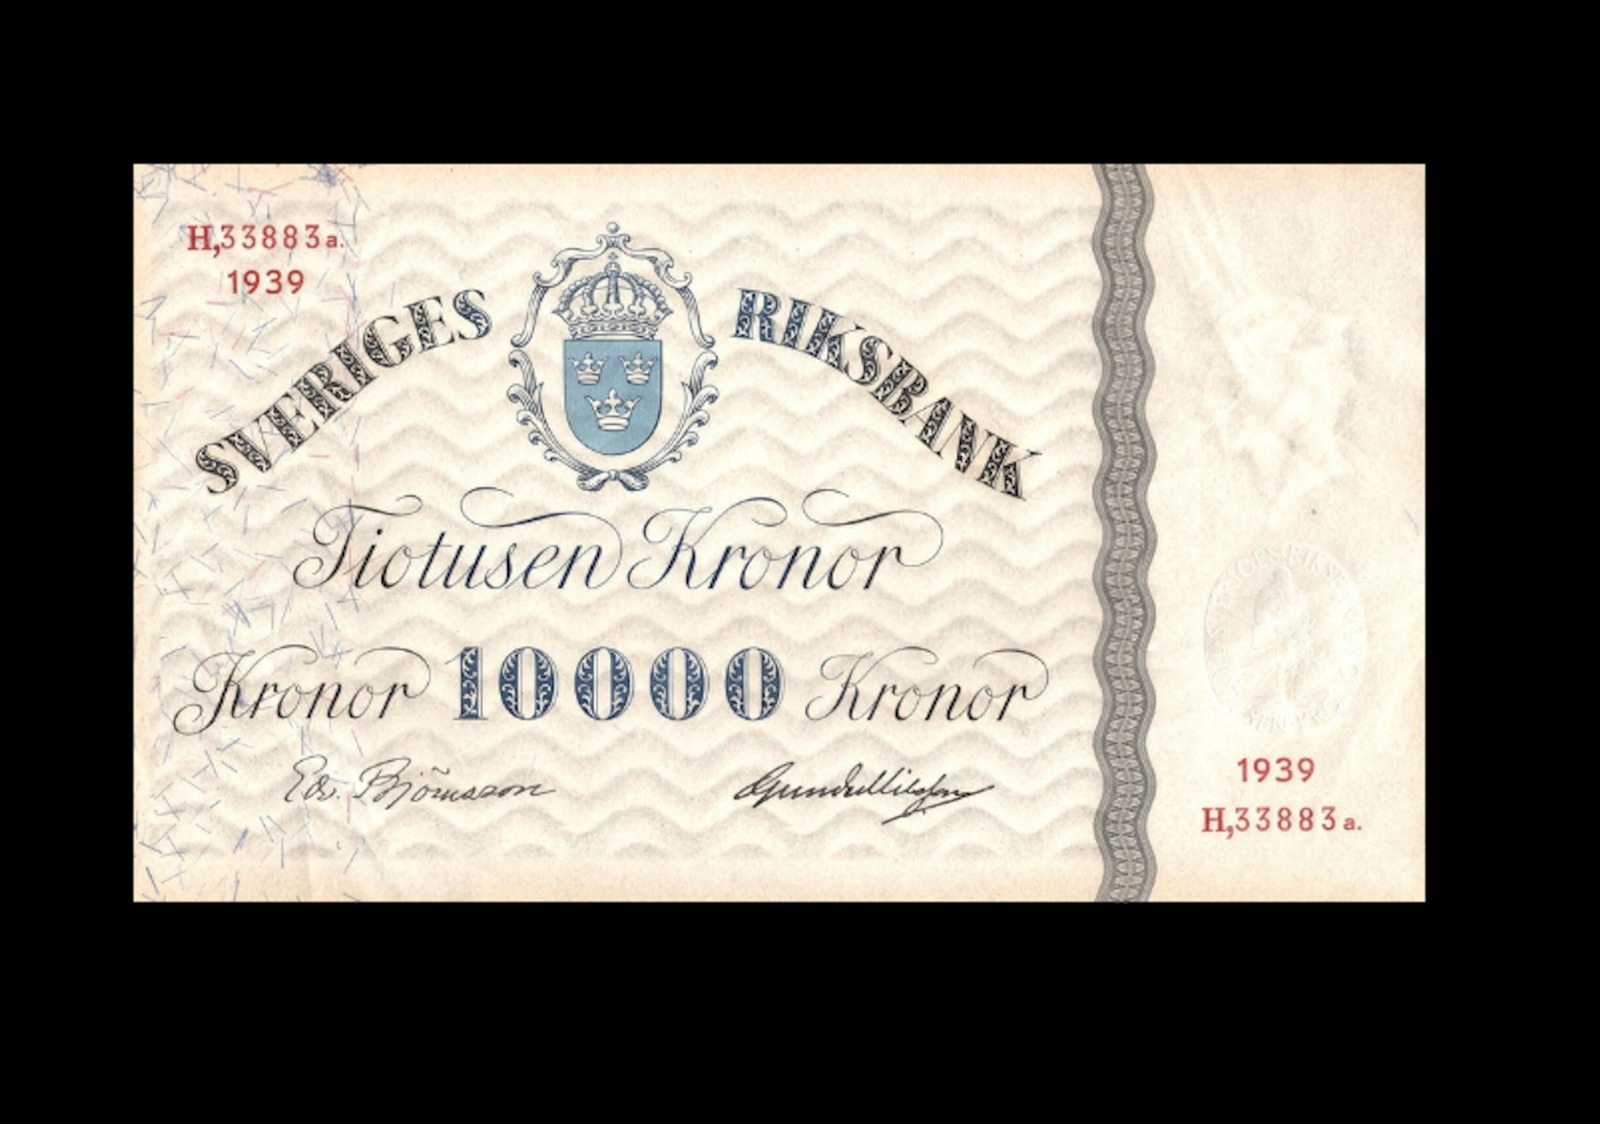 Reproduction Rare Sweden Sveriges 10000 Kroner 1939 Banknote Antique